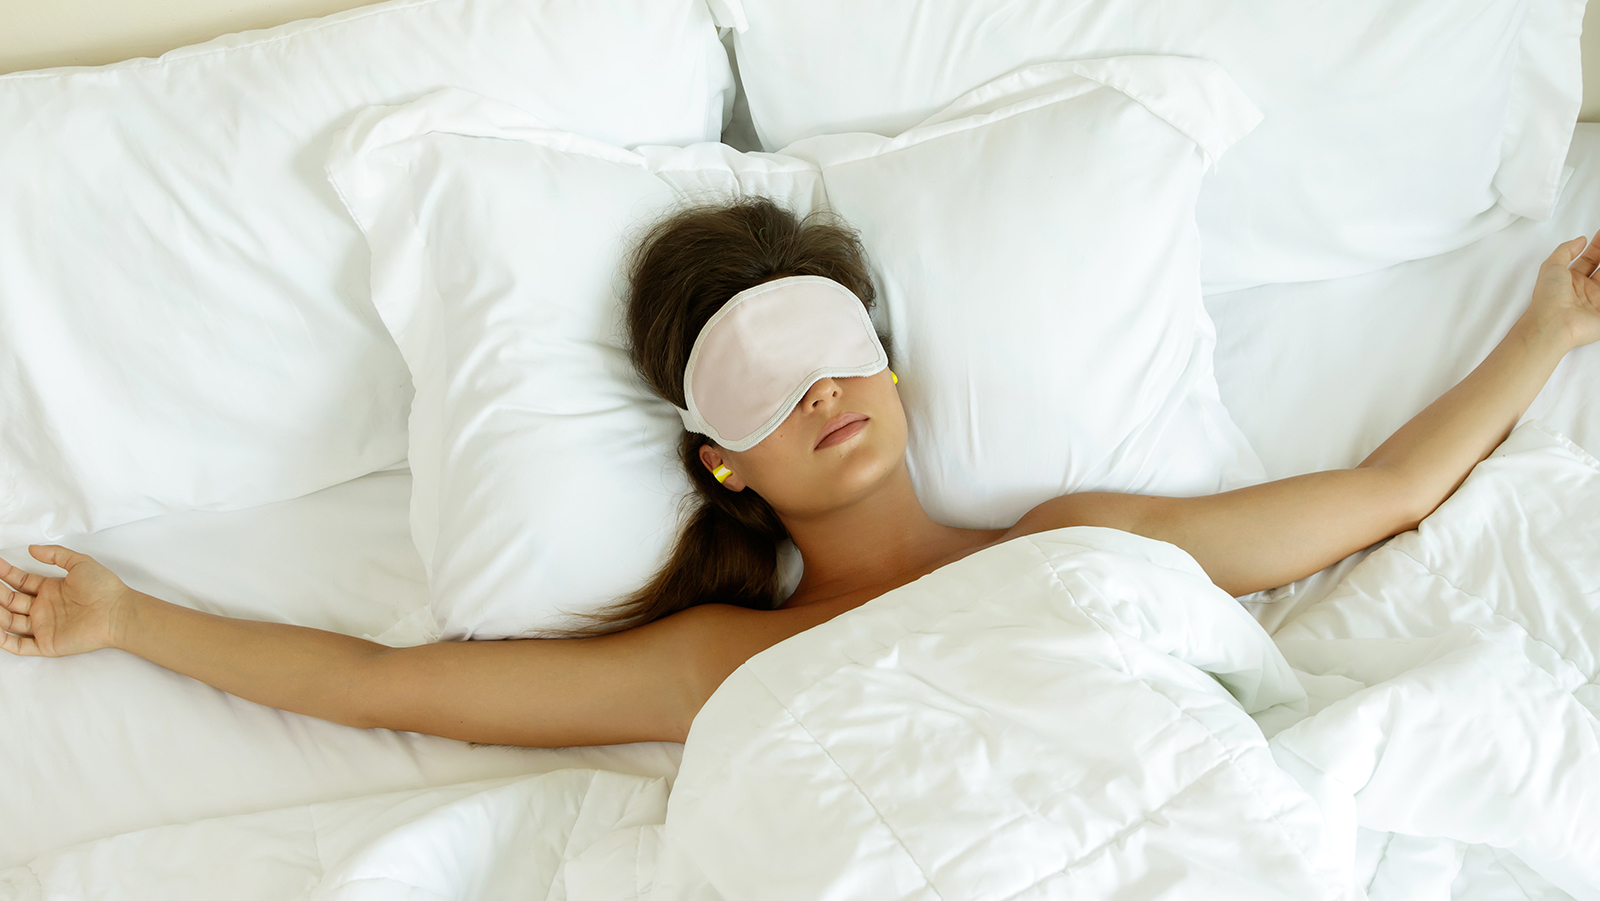 Αυτή είναι η χειρότερη στάση ύπνου που μπορεί να τραυματίσει την πλάτη (βίντεο)